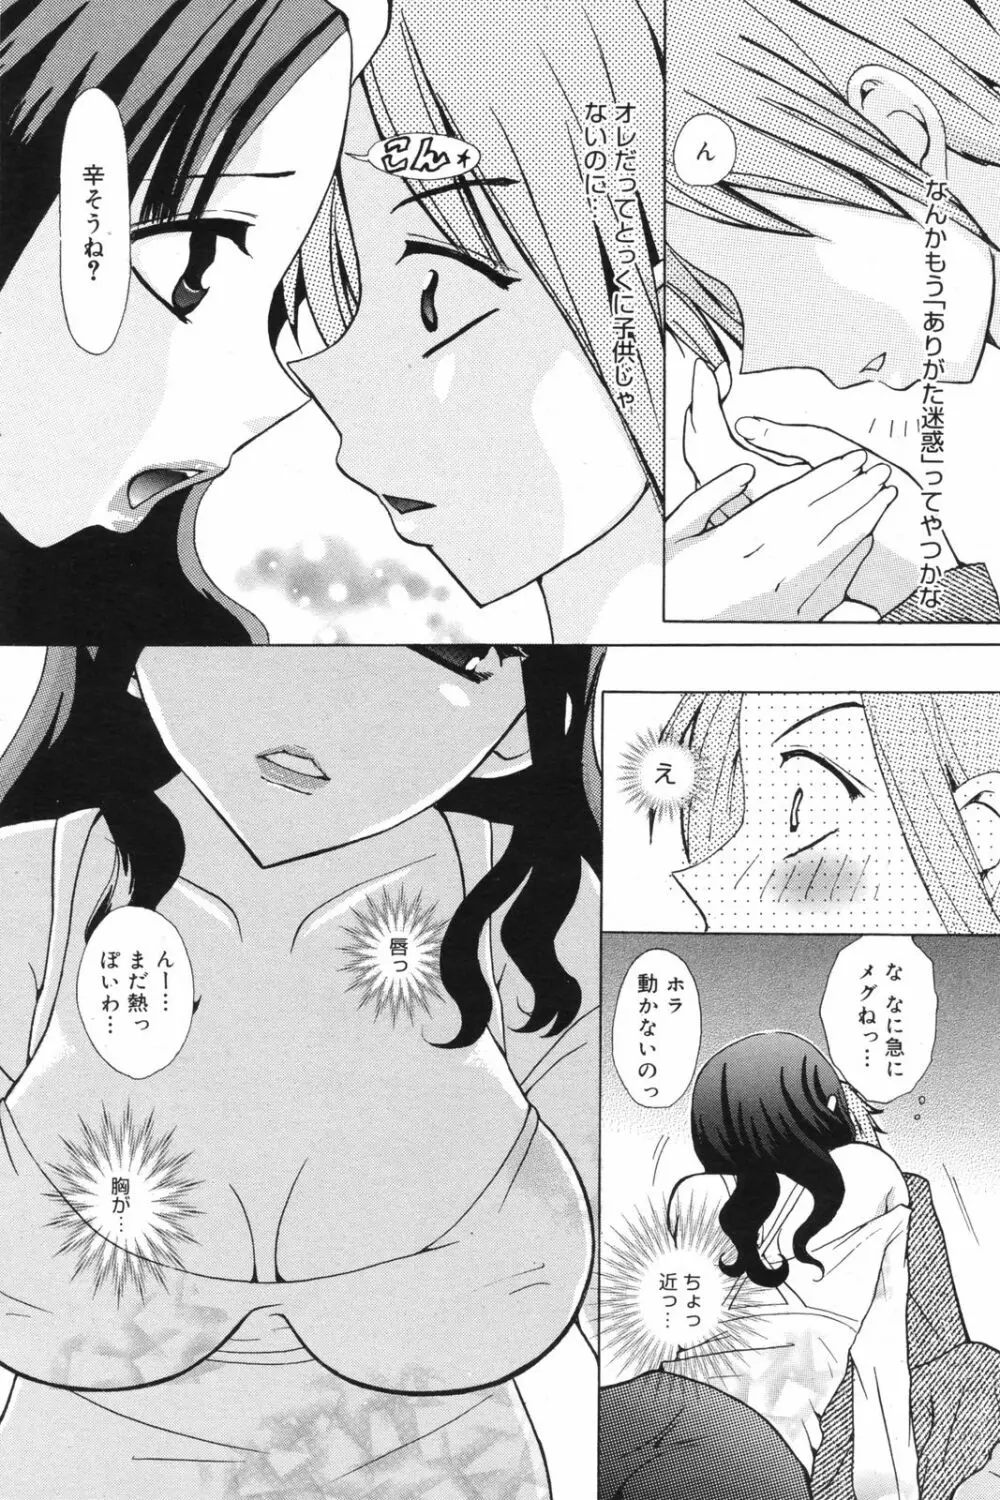 Manga Bangaichi 2008-11 182ページ